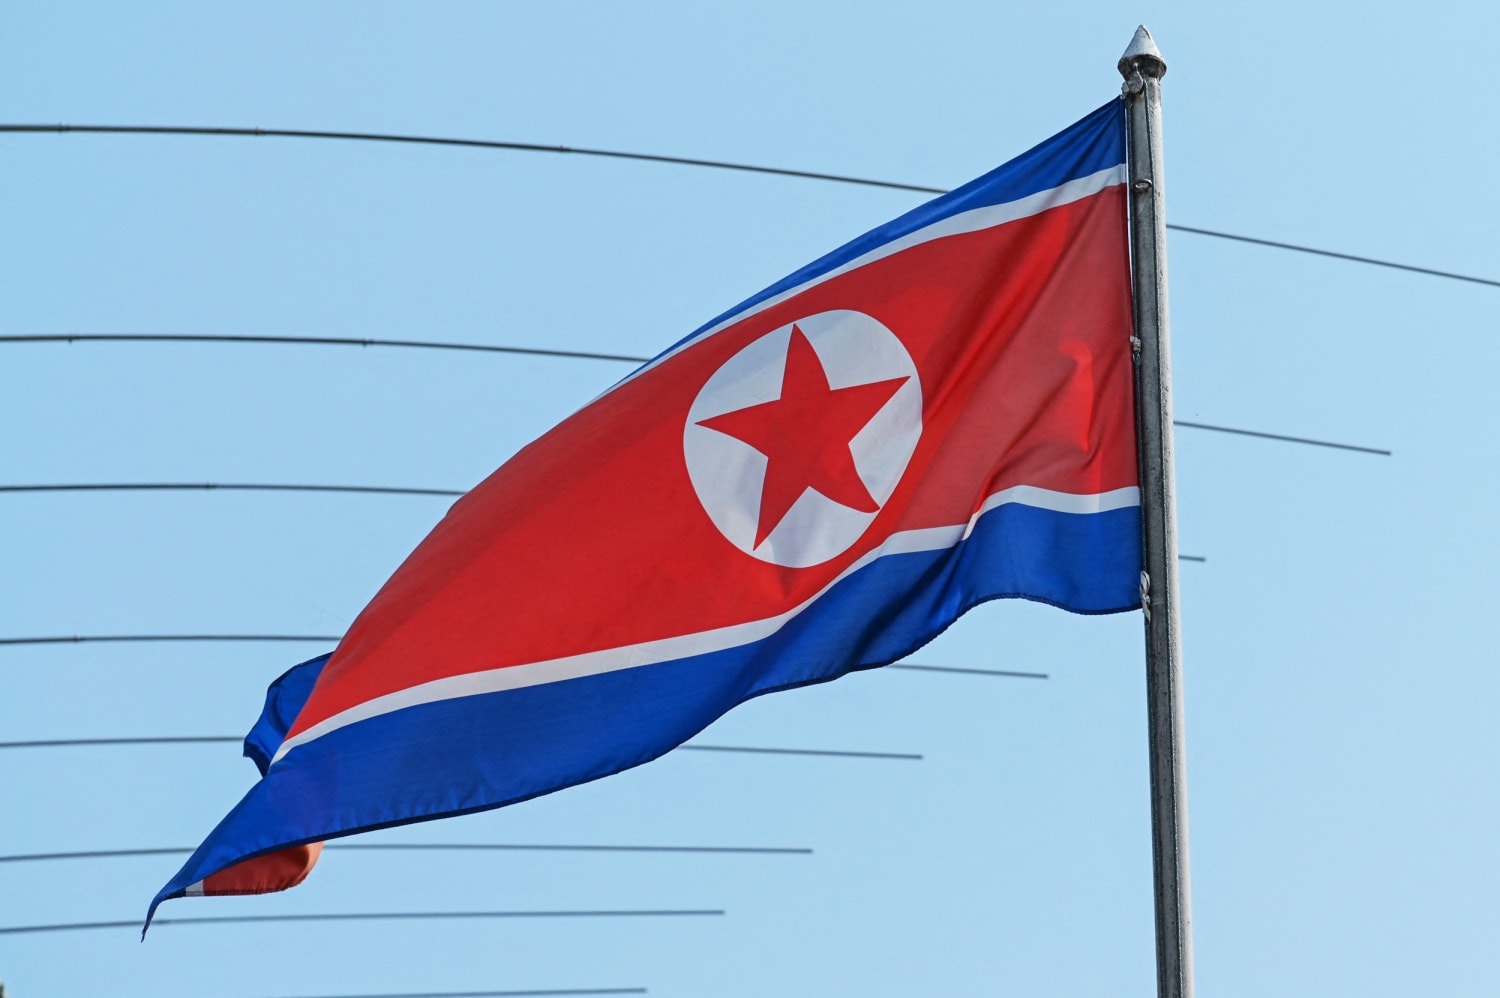 Severní Korea uzavírá několik ambasád po celém světě